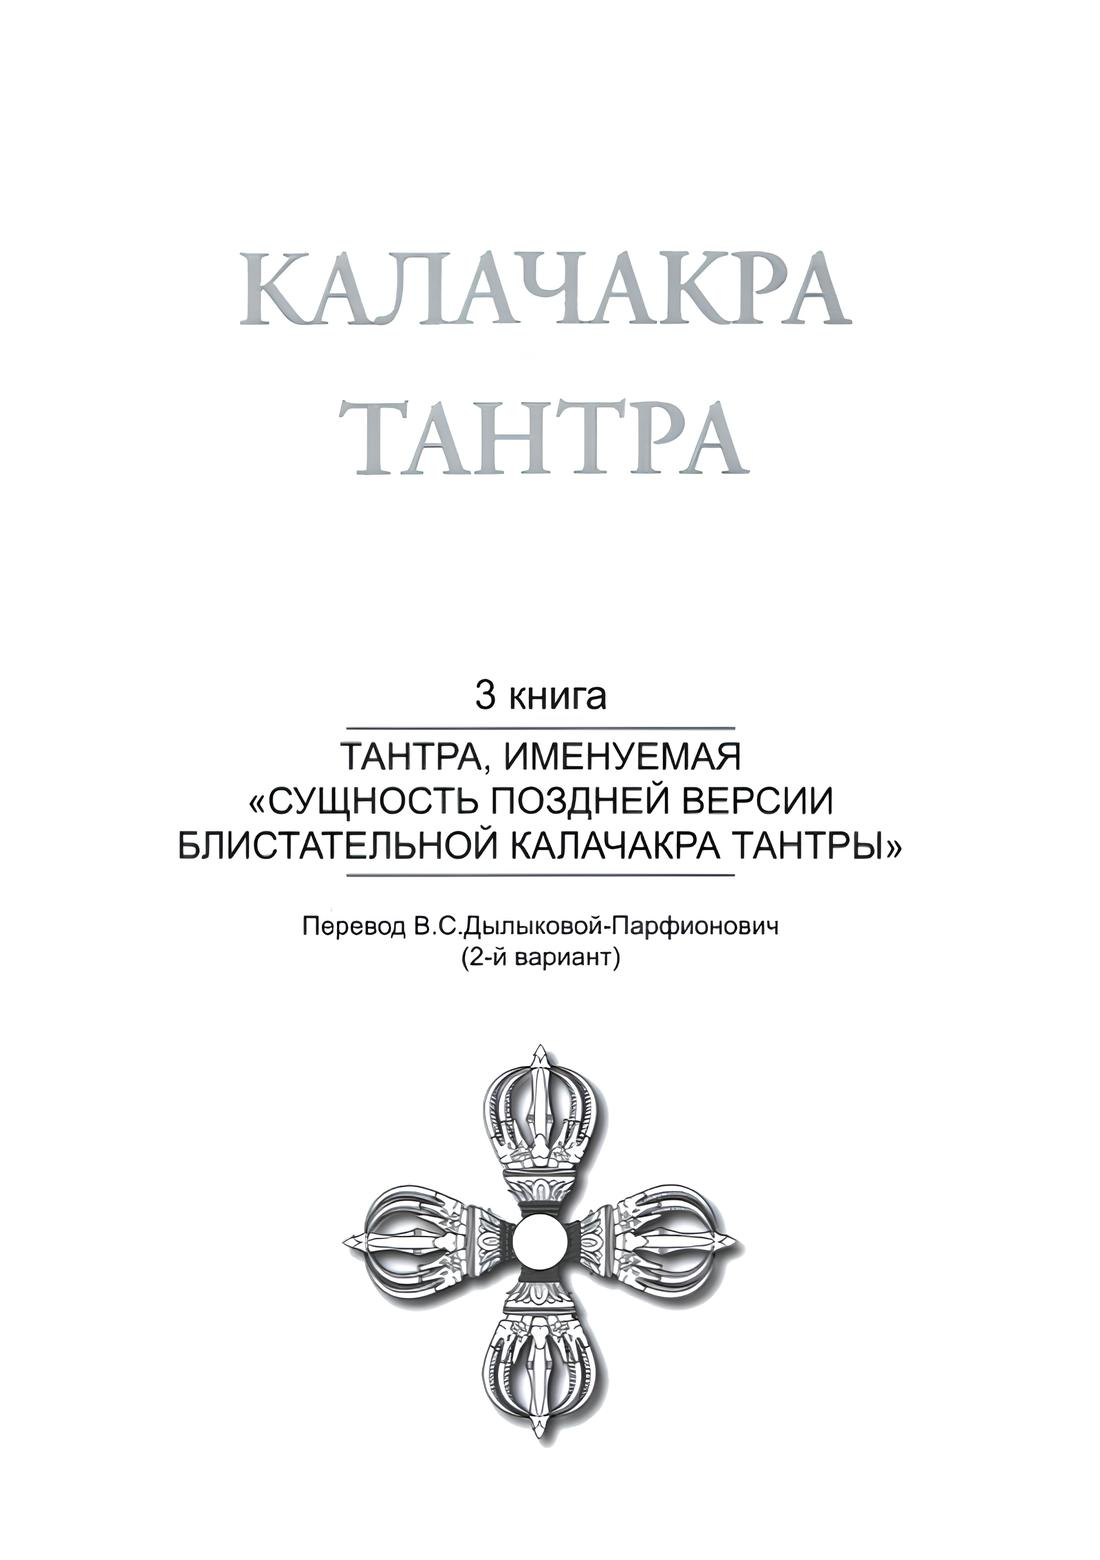 "Калачакра Т. 3. Тантра, именуемая «Сущность поздней версии блистательной Калачакра Тантры»" 